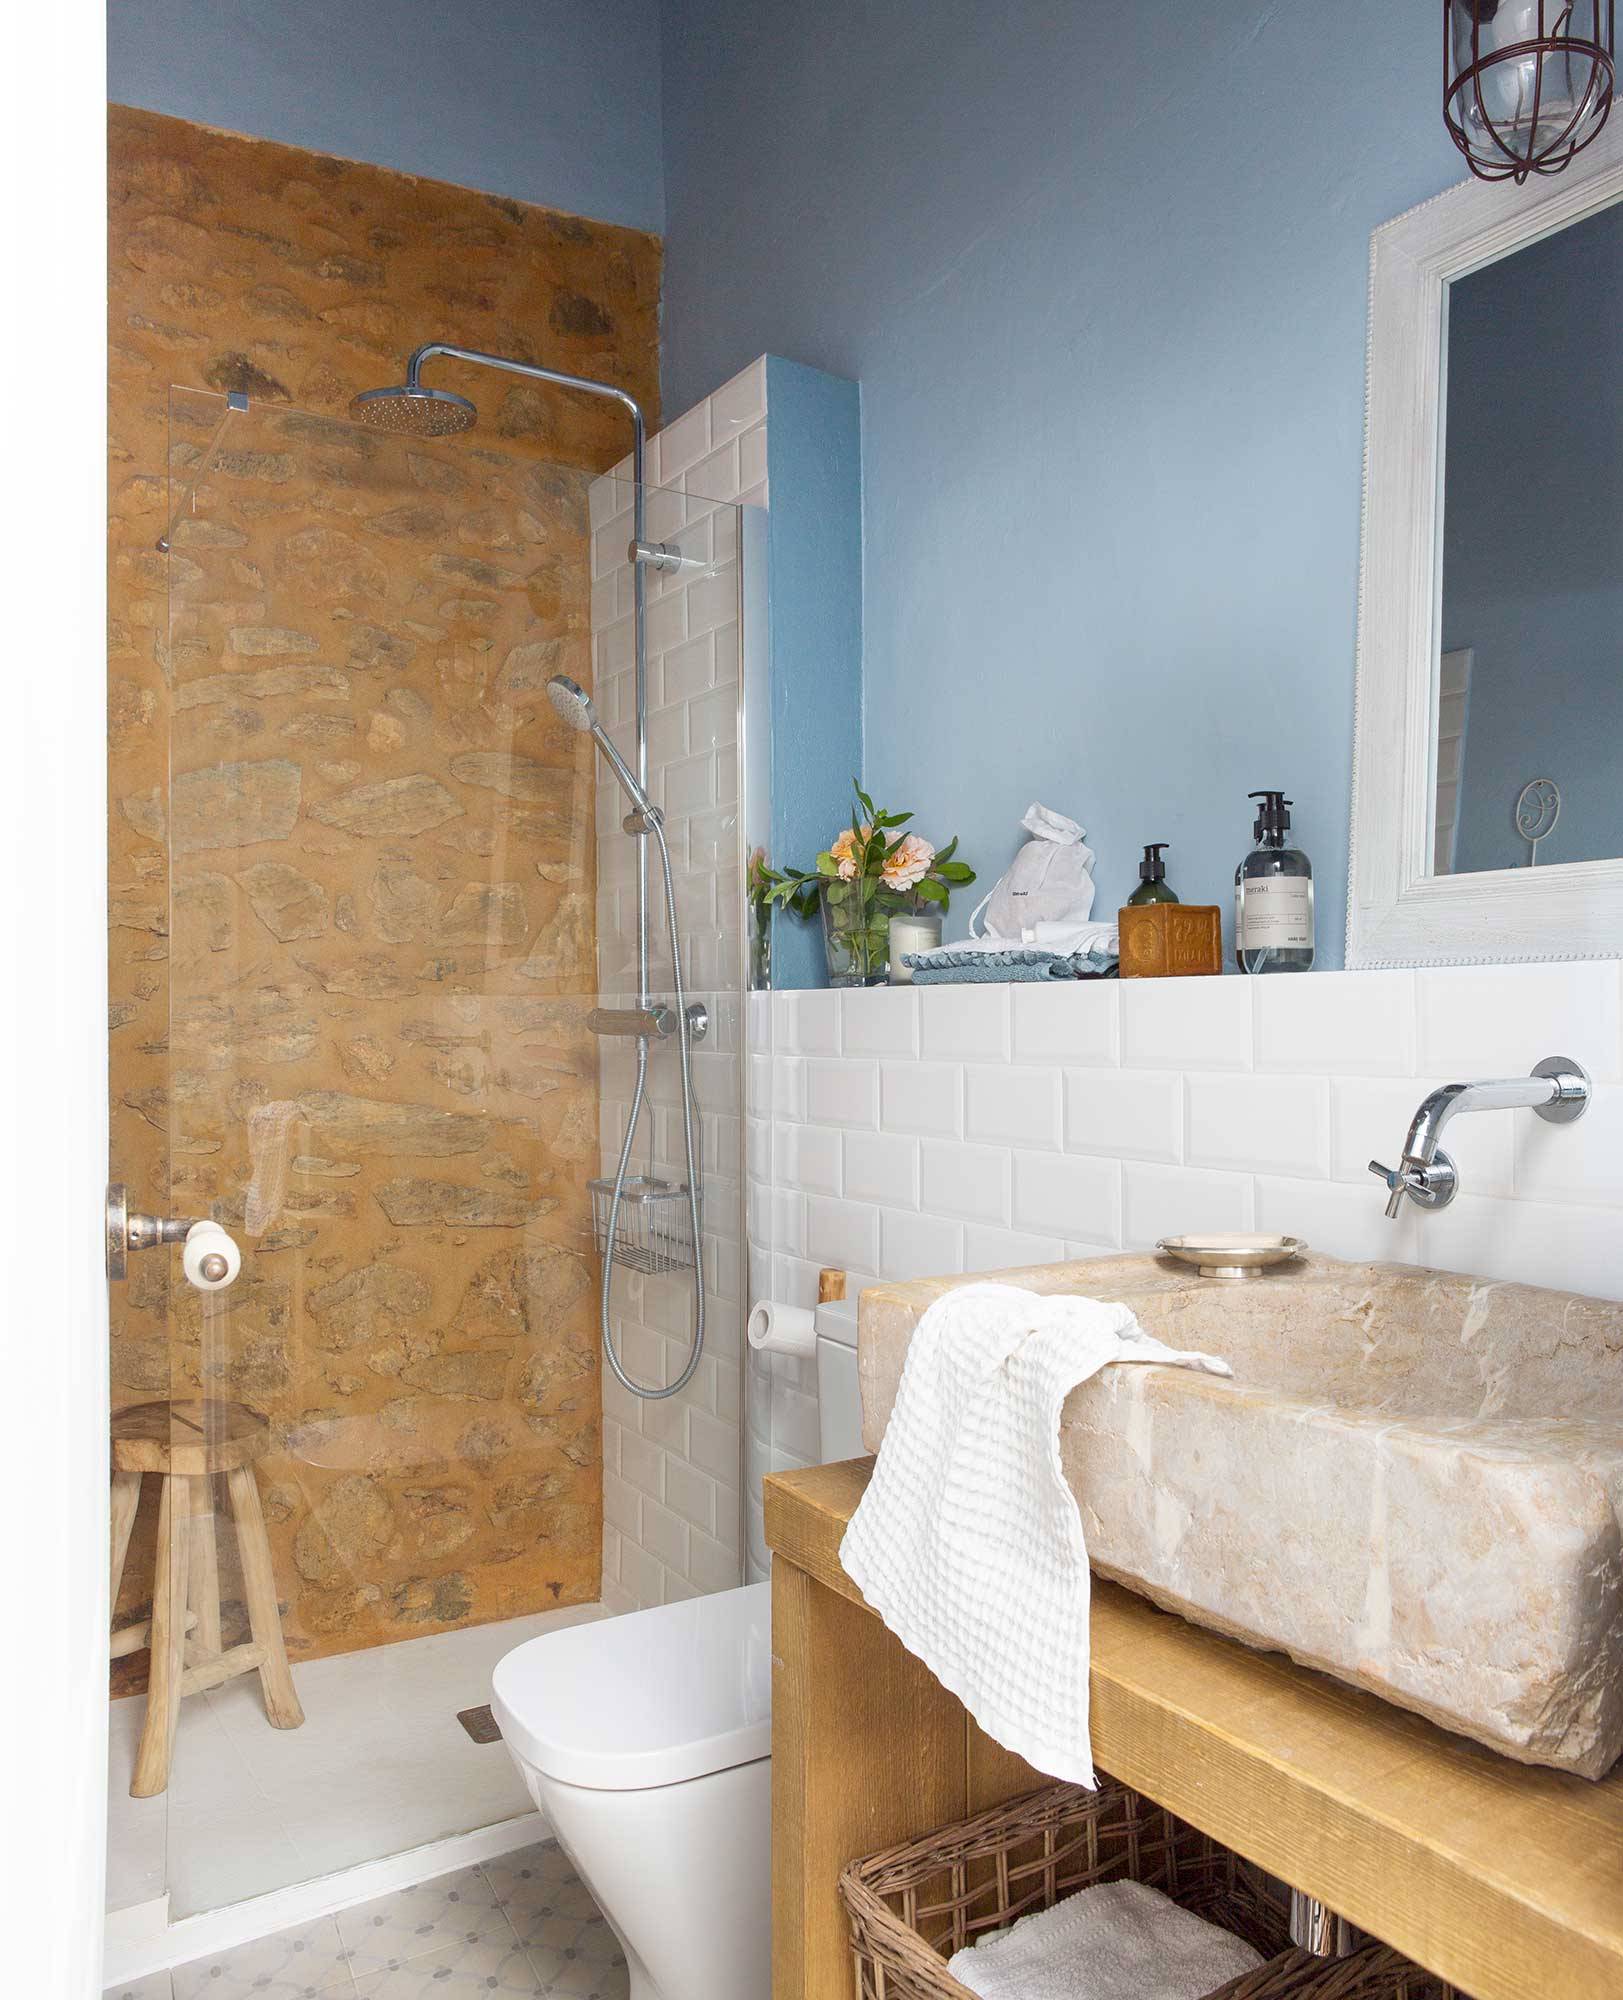 Baño con ducha de obra y pared bicolor con azulejos tipo metro blancos y color azul en la parte superior 00489213 O